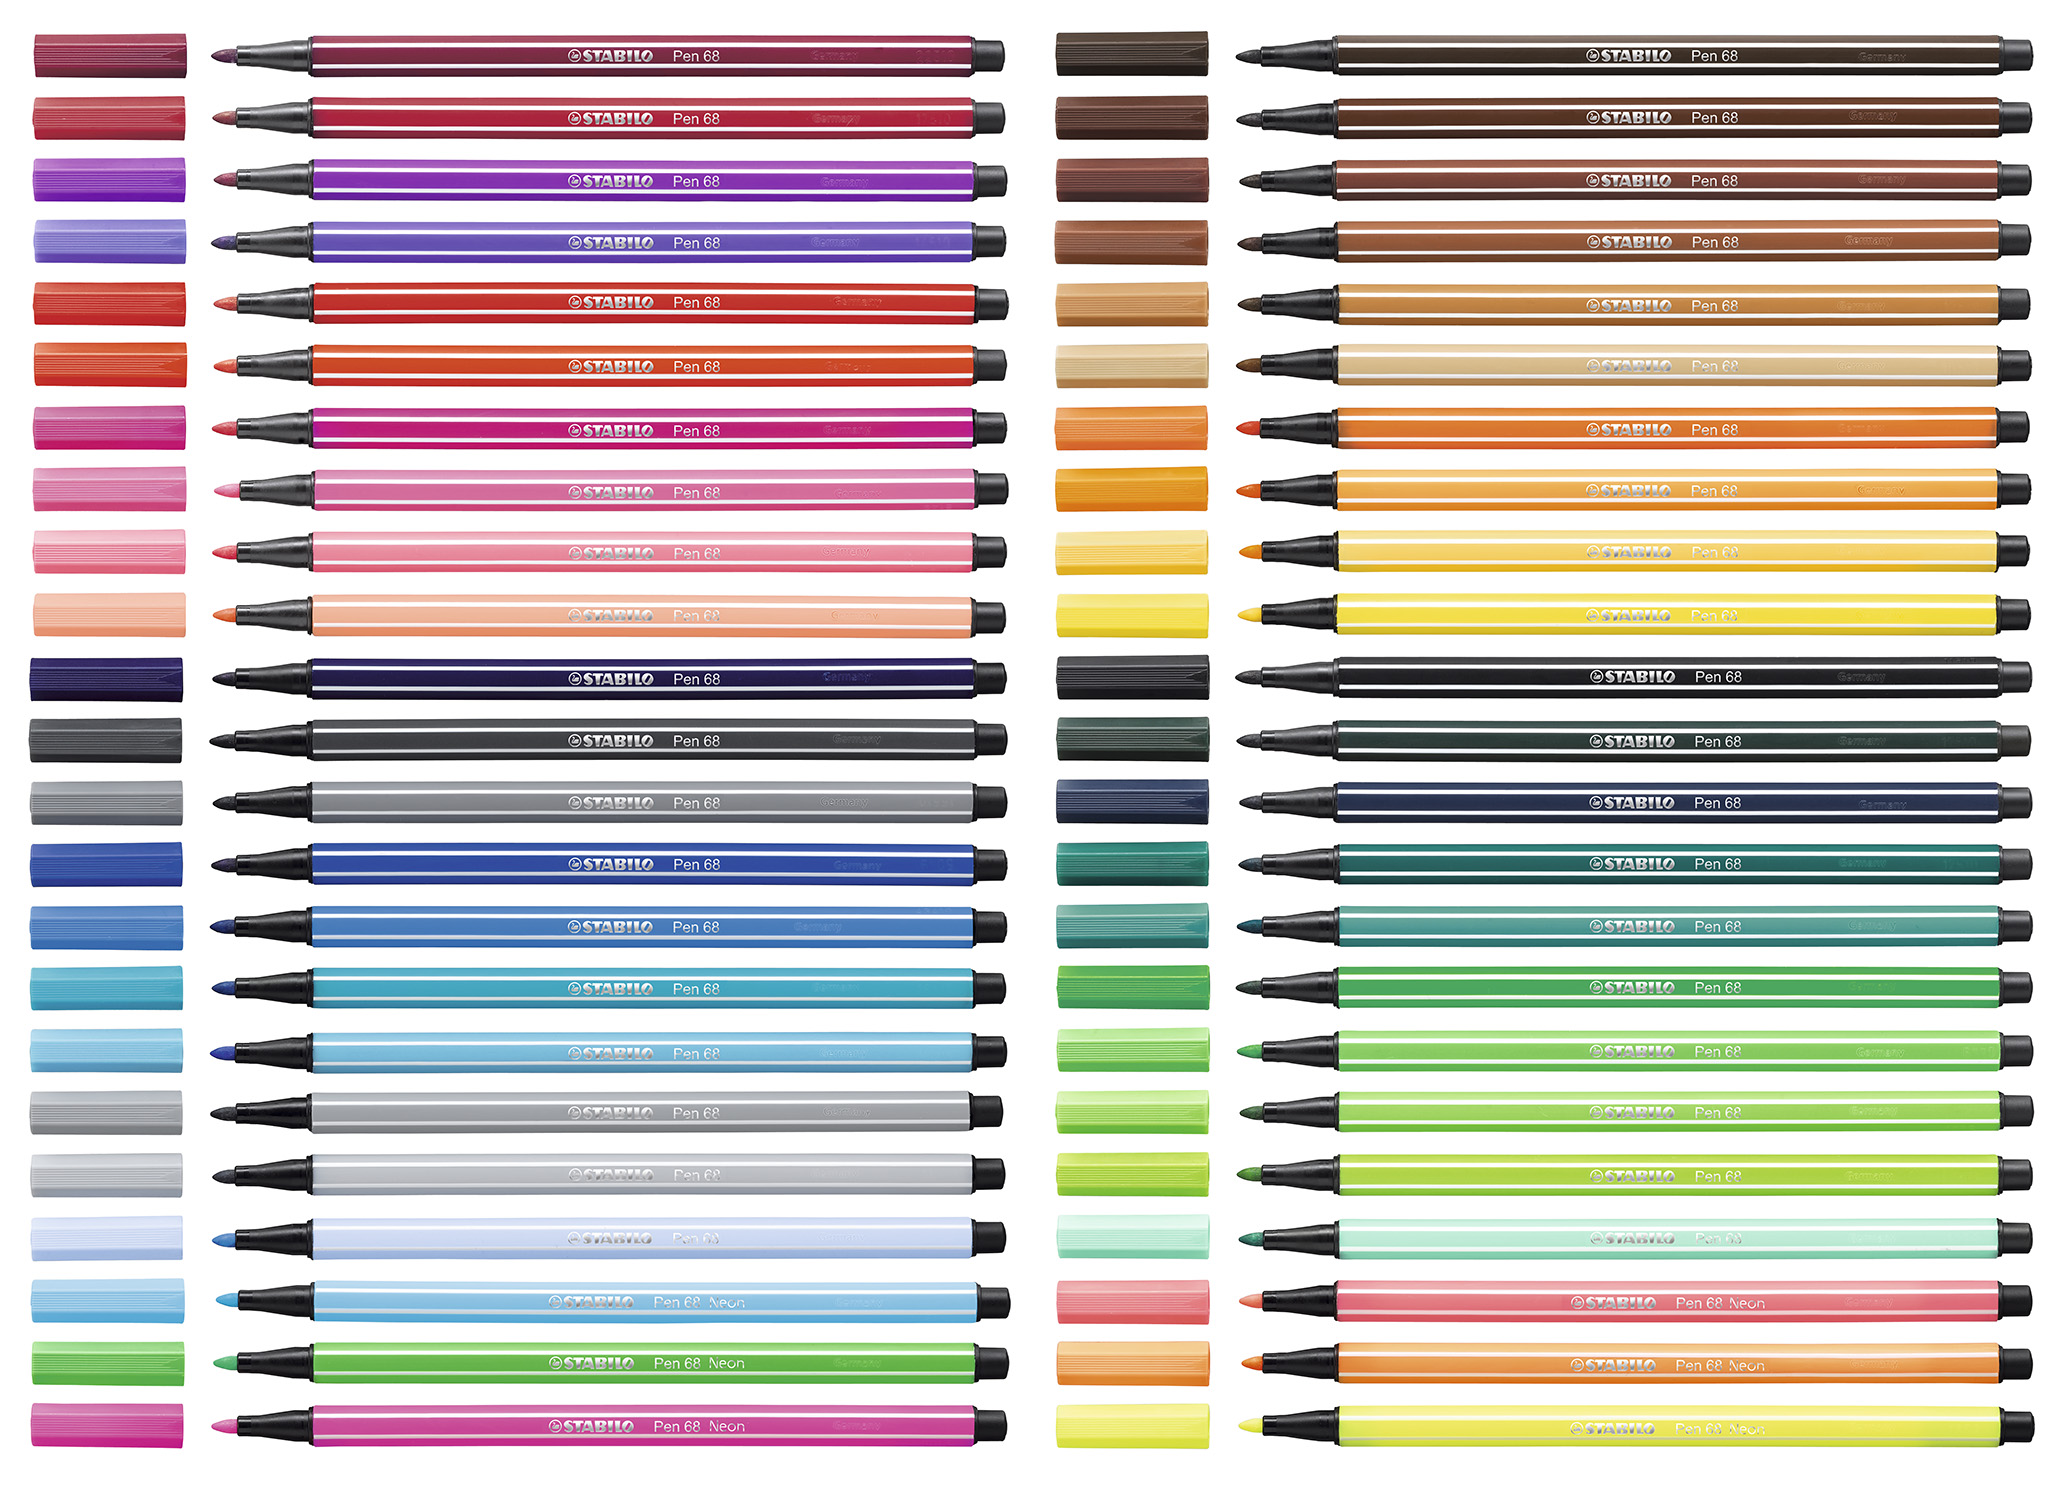 Estuche 8 Marcadores Fluorescentes STABILO swing cool Pastel Edition  Multicolor · STABILO · El Corte Inglés